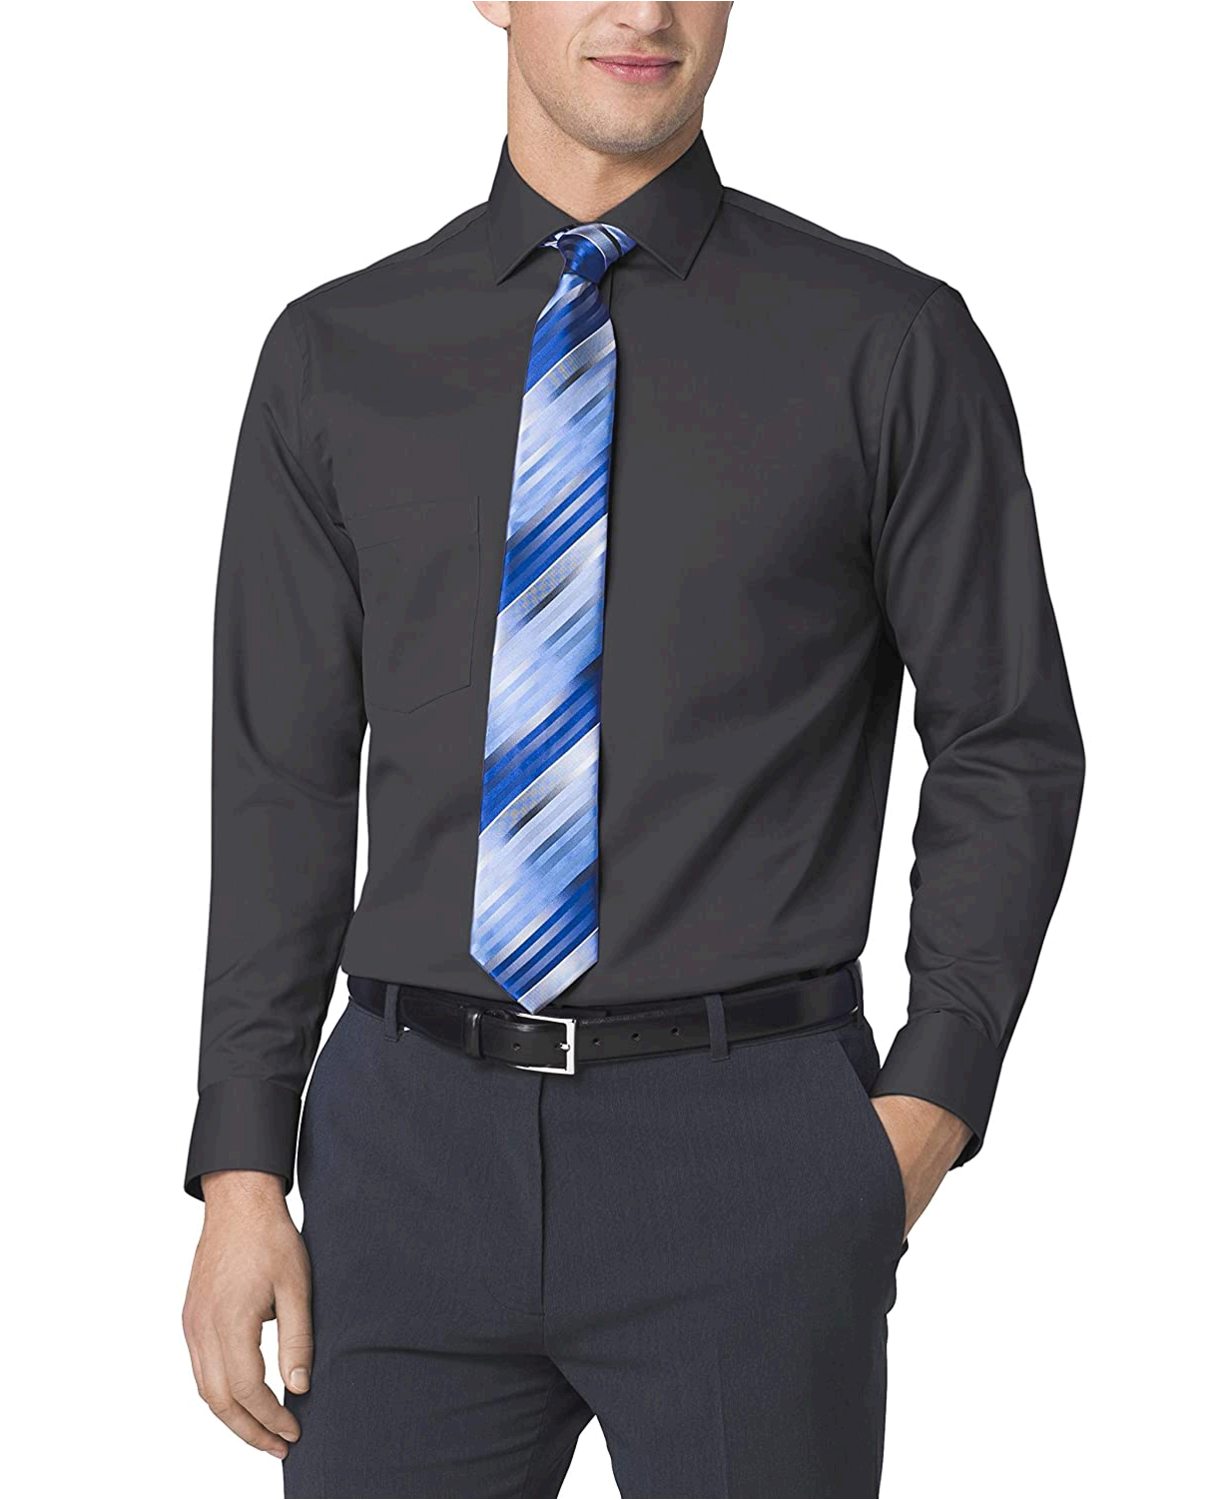 Men's FIT Dress Shirts Flex, Charcoal, Size 20